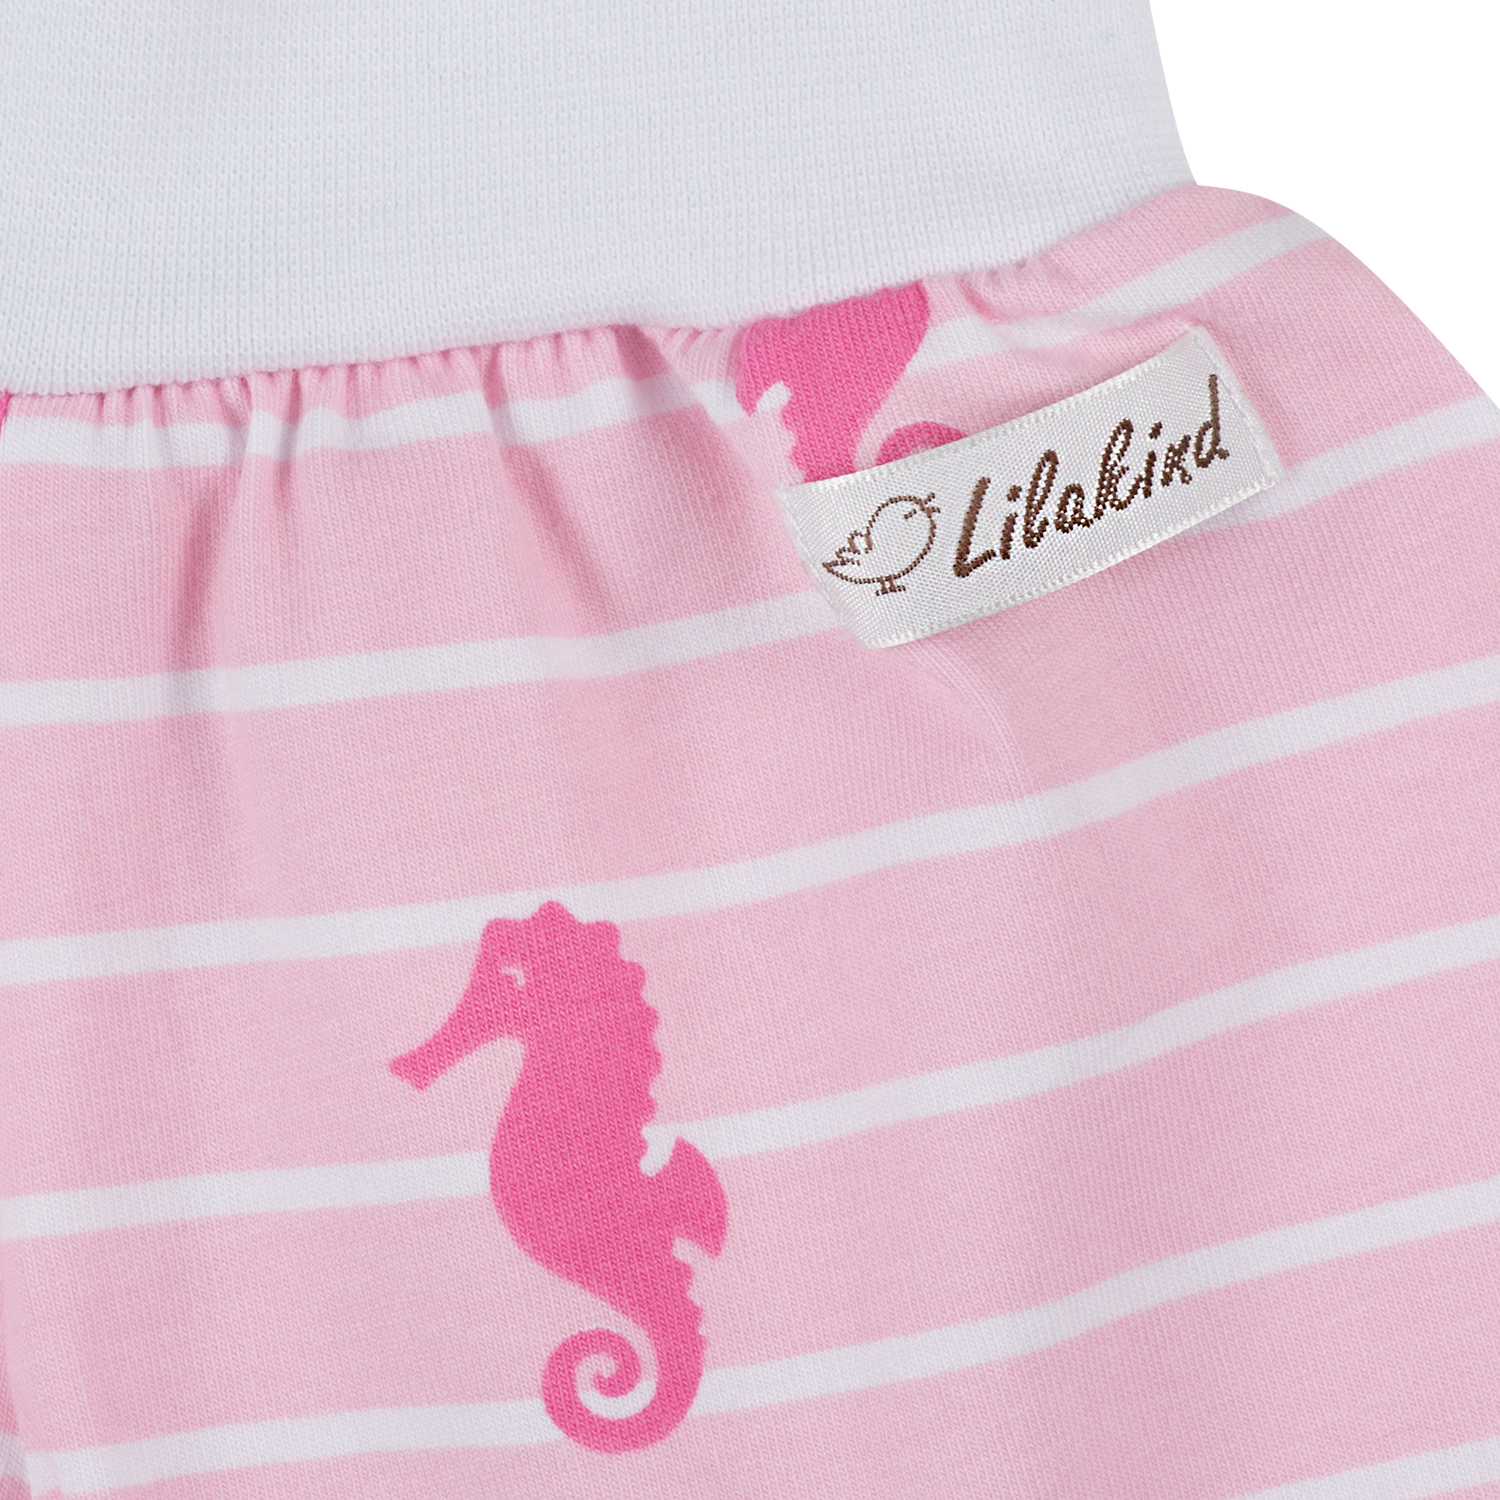 Lilakind Kurze Mädchen Pumphose Shorts Buxe Sommerhose Seepferdchen Made in Germany